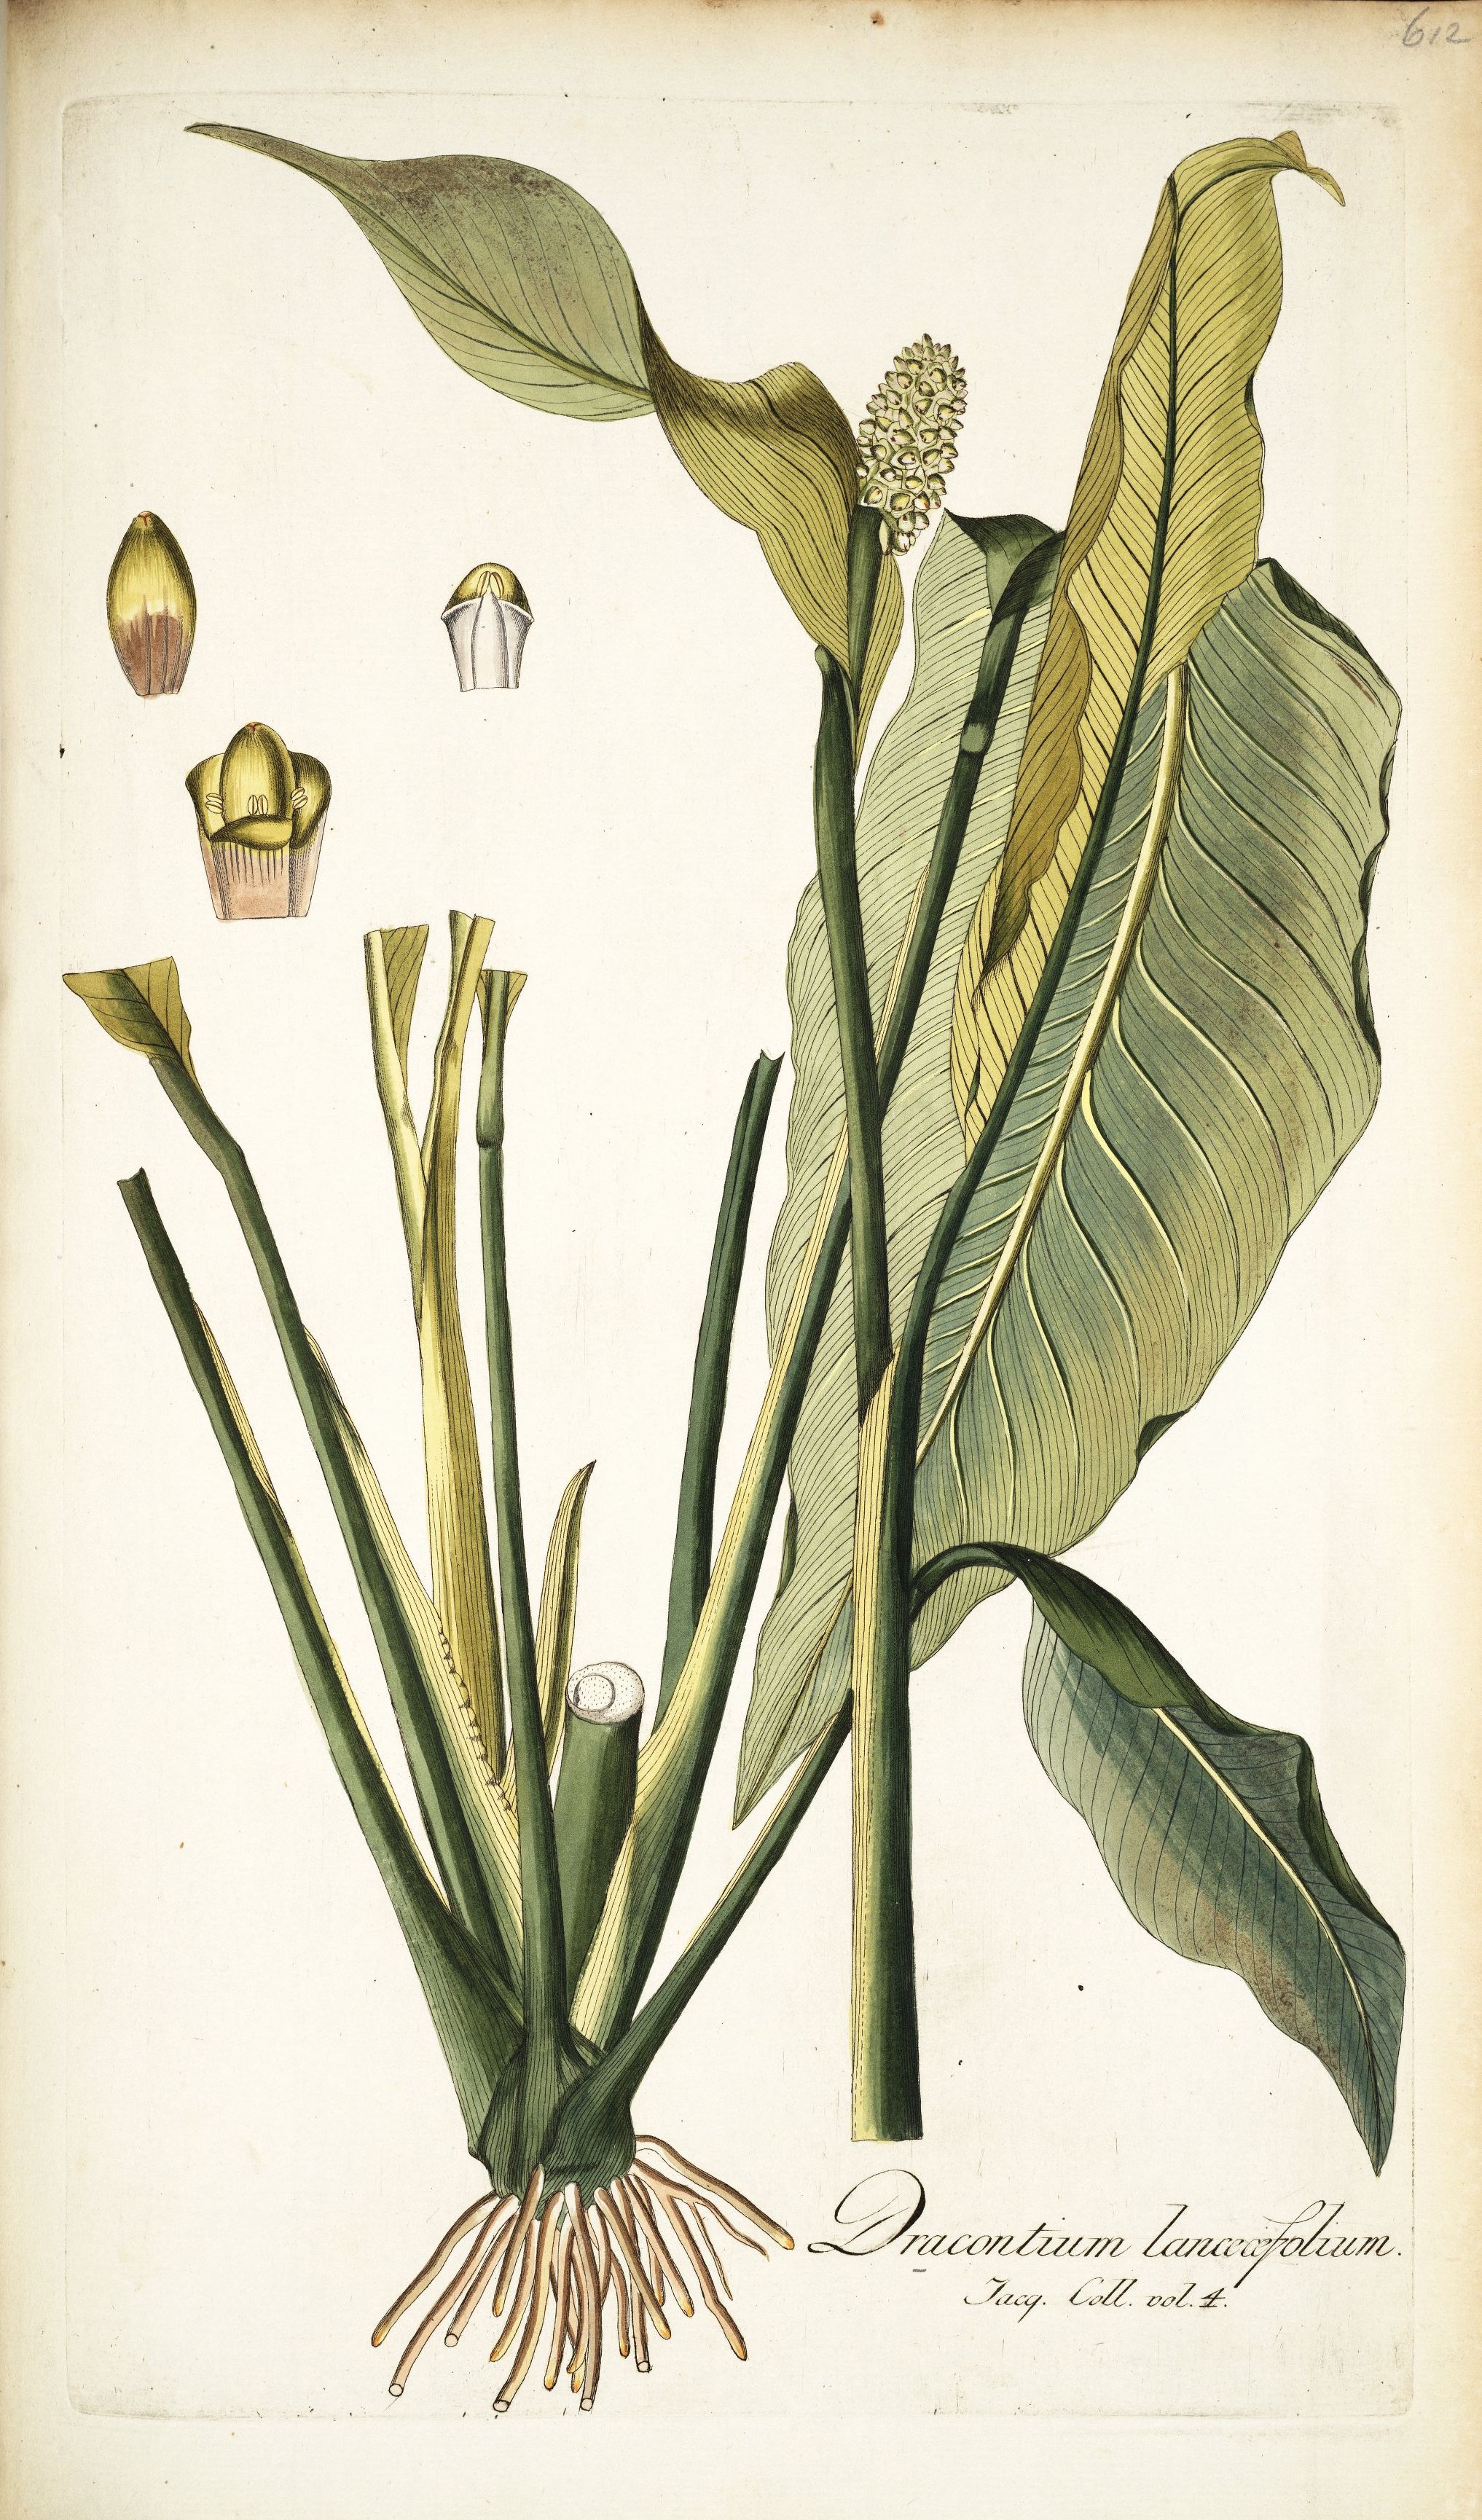 Dracontium lanceaefolium Jacquin